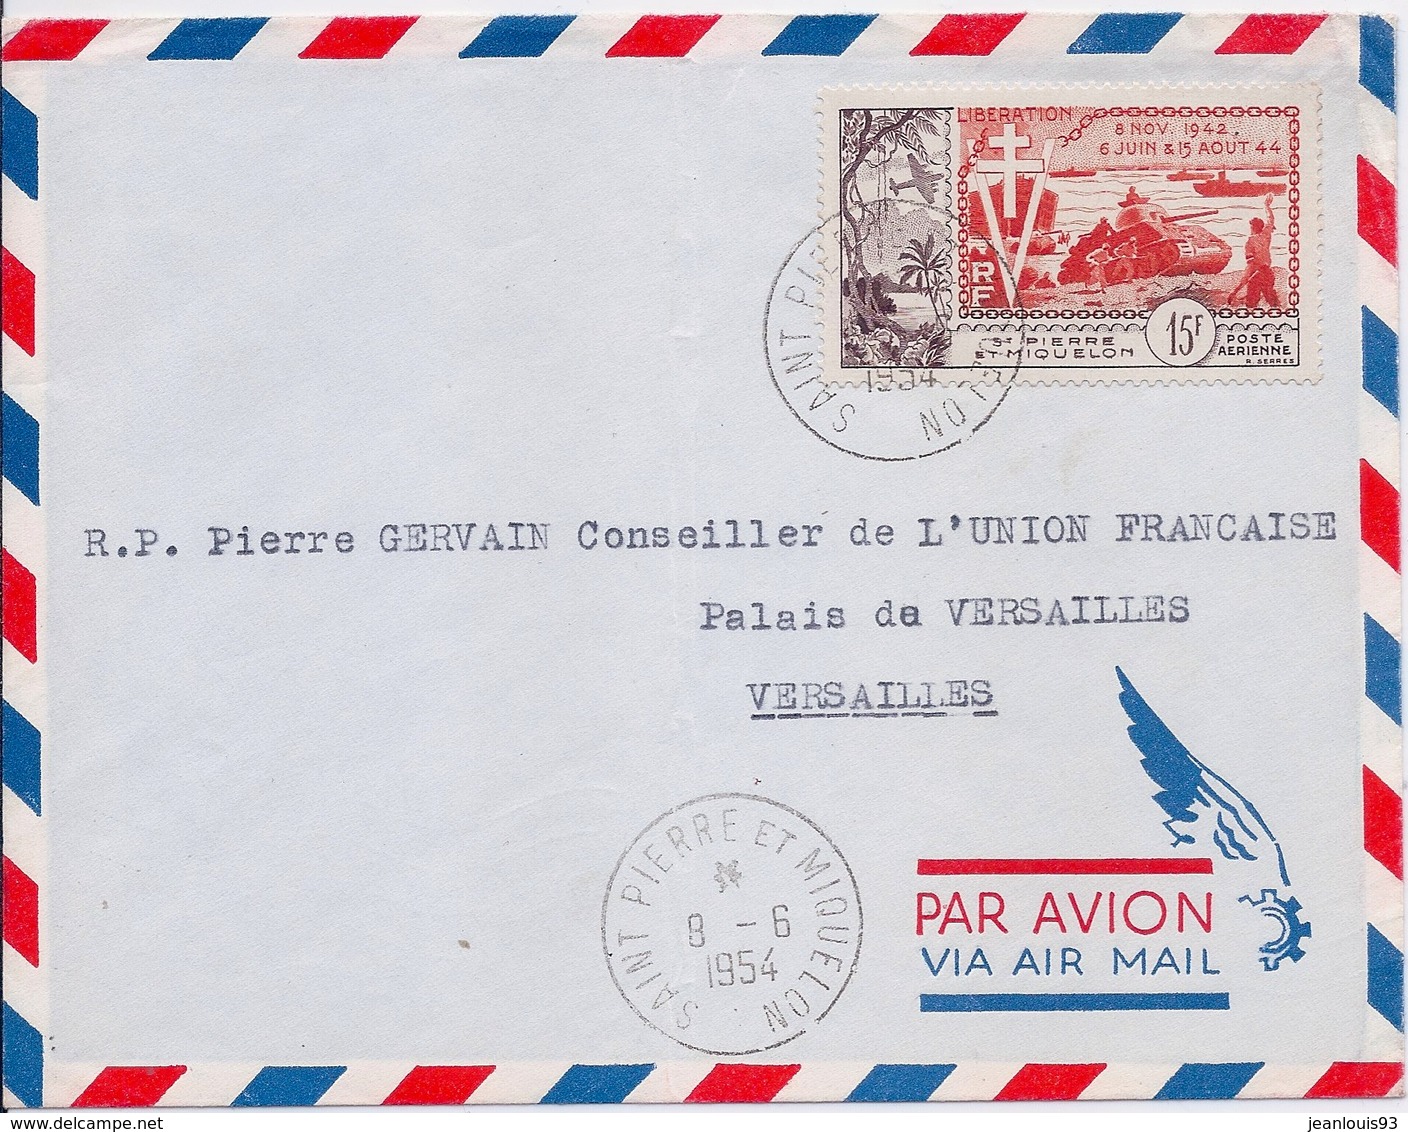 SAINT PIERRE ET MIQUELON - LETTRE PAR AVION TIMBRE LIBERATION 1954 - Covers & Documents